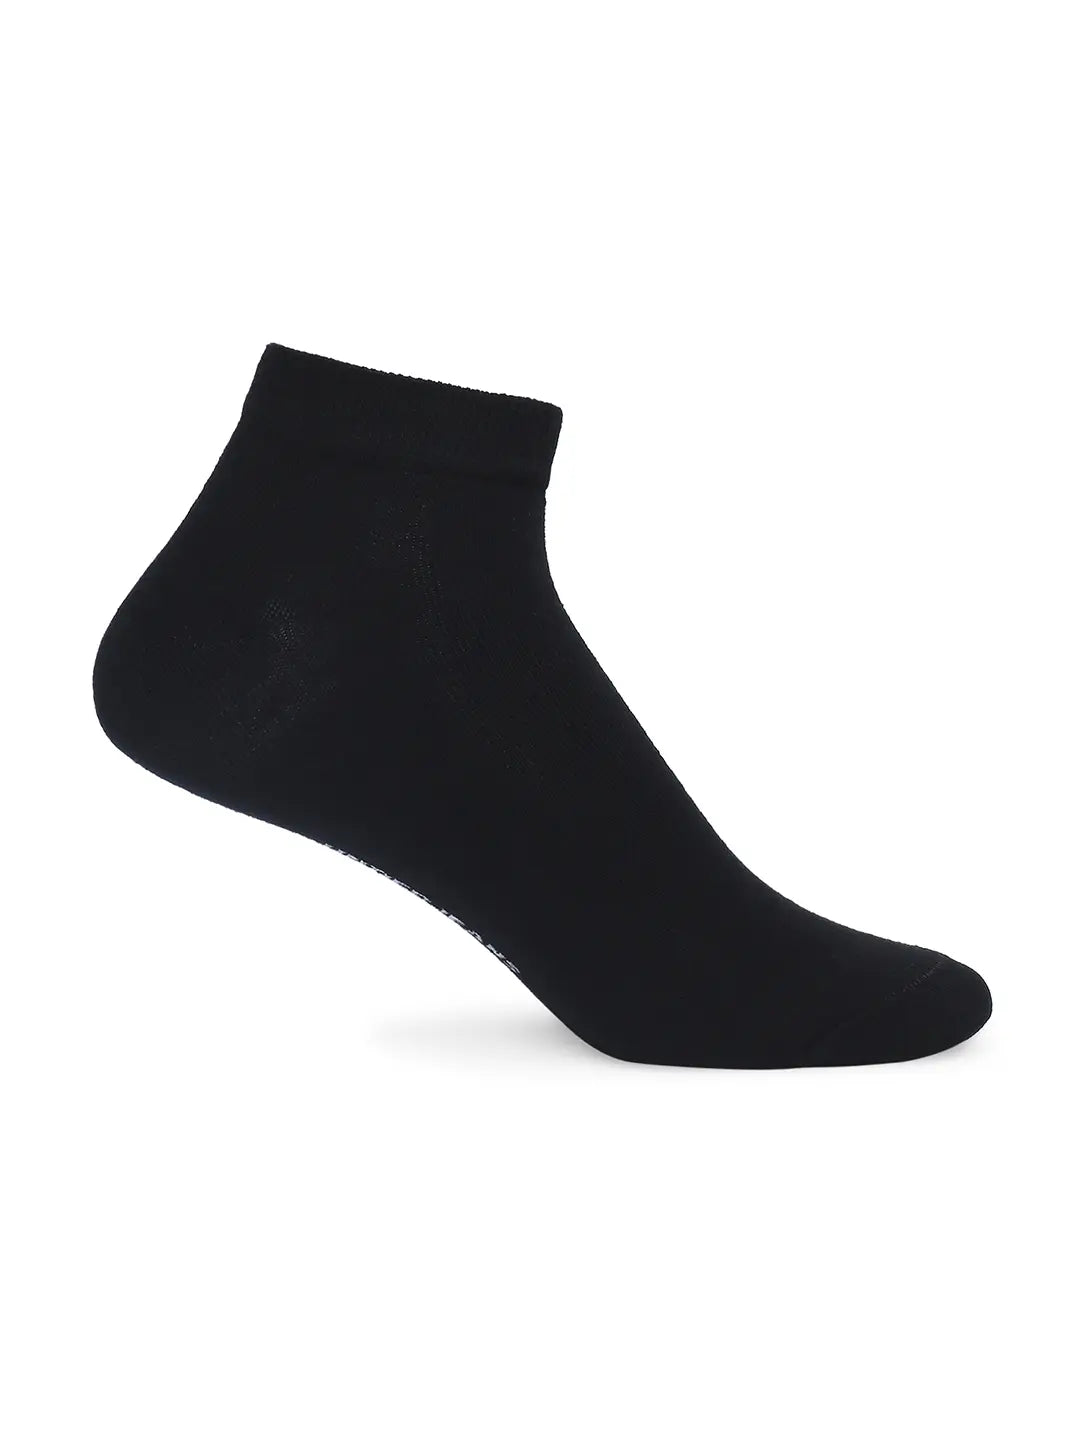 Sneaker Liner Socks 4 Pair Value Pack | HUE